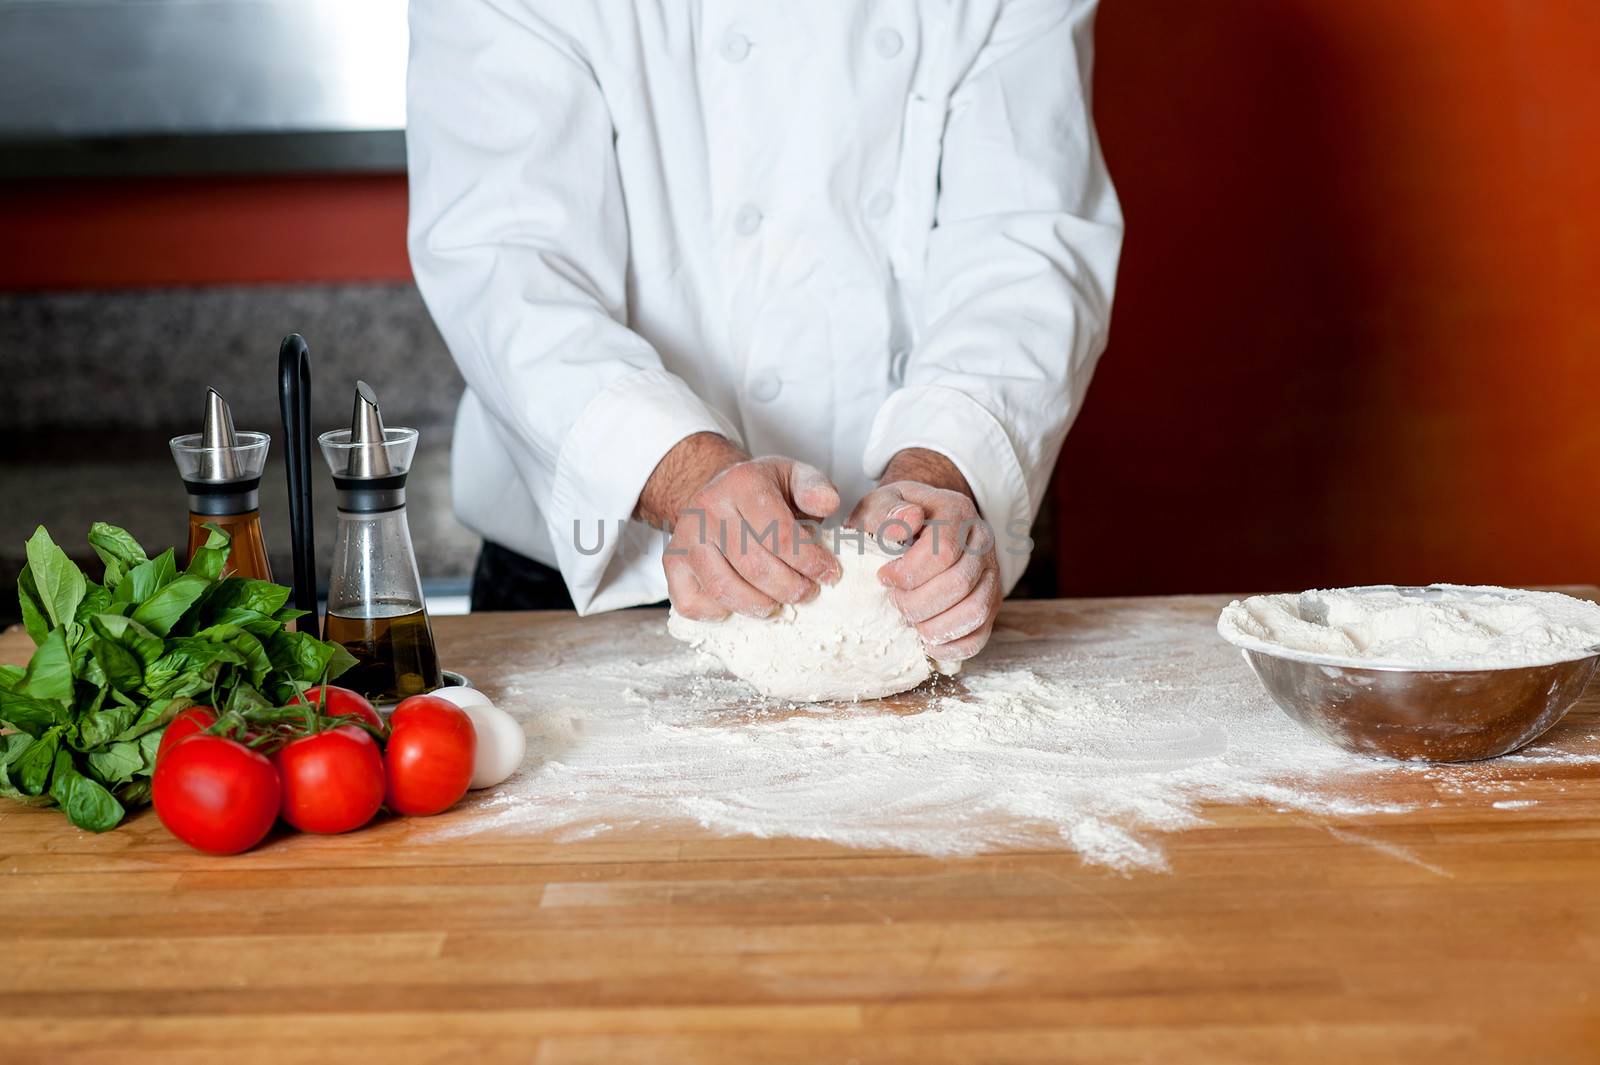 Hands of male chef preparing pizza dough